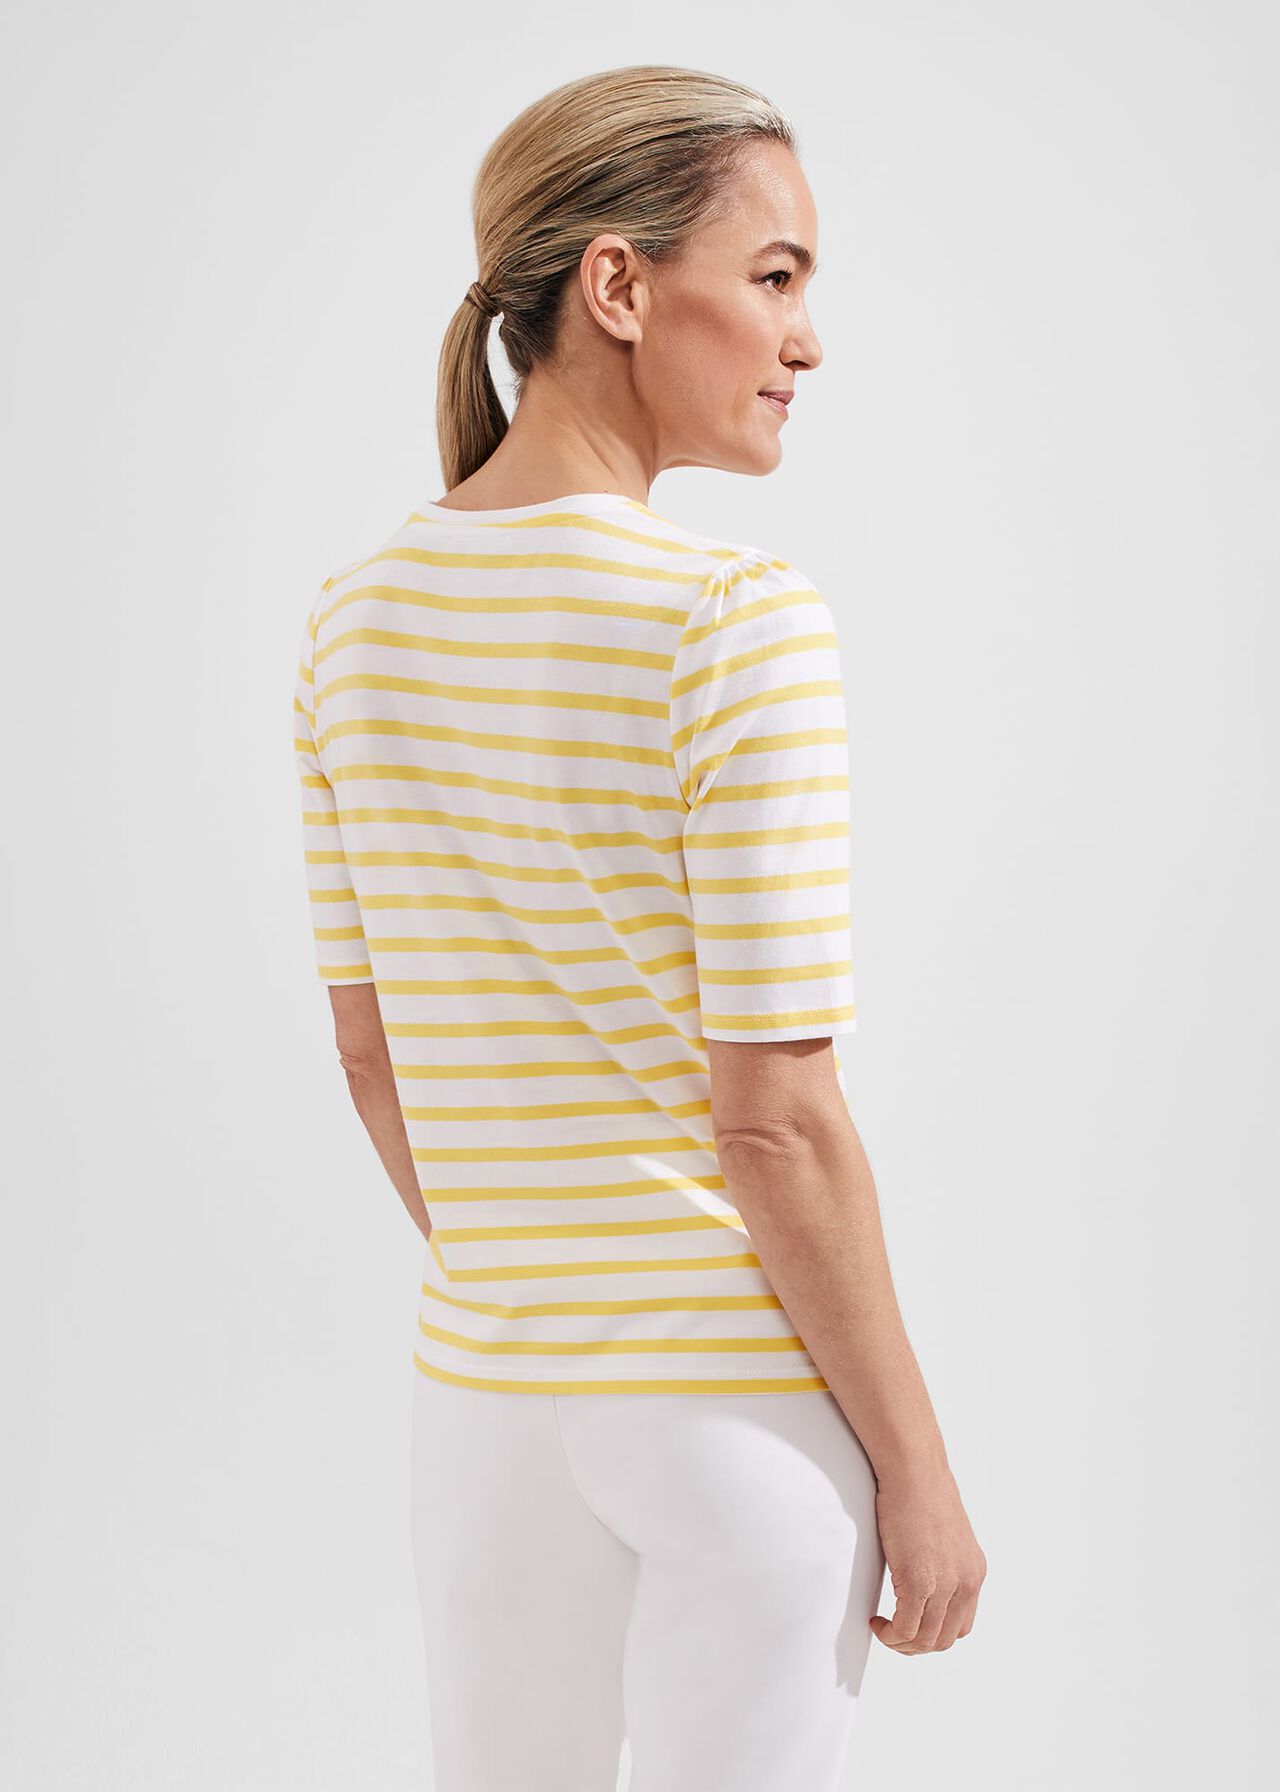 Eva Cotton Striped T-shirt, White Yellow, hi-res